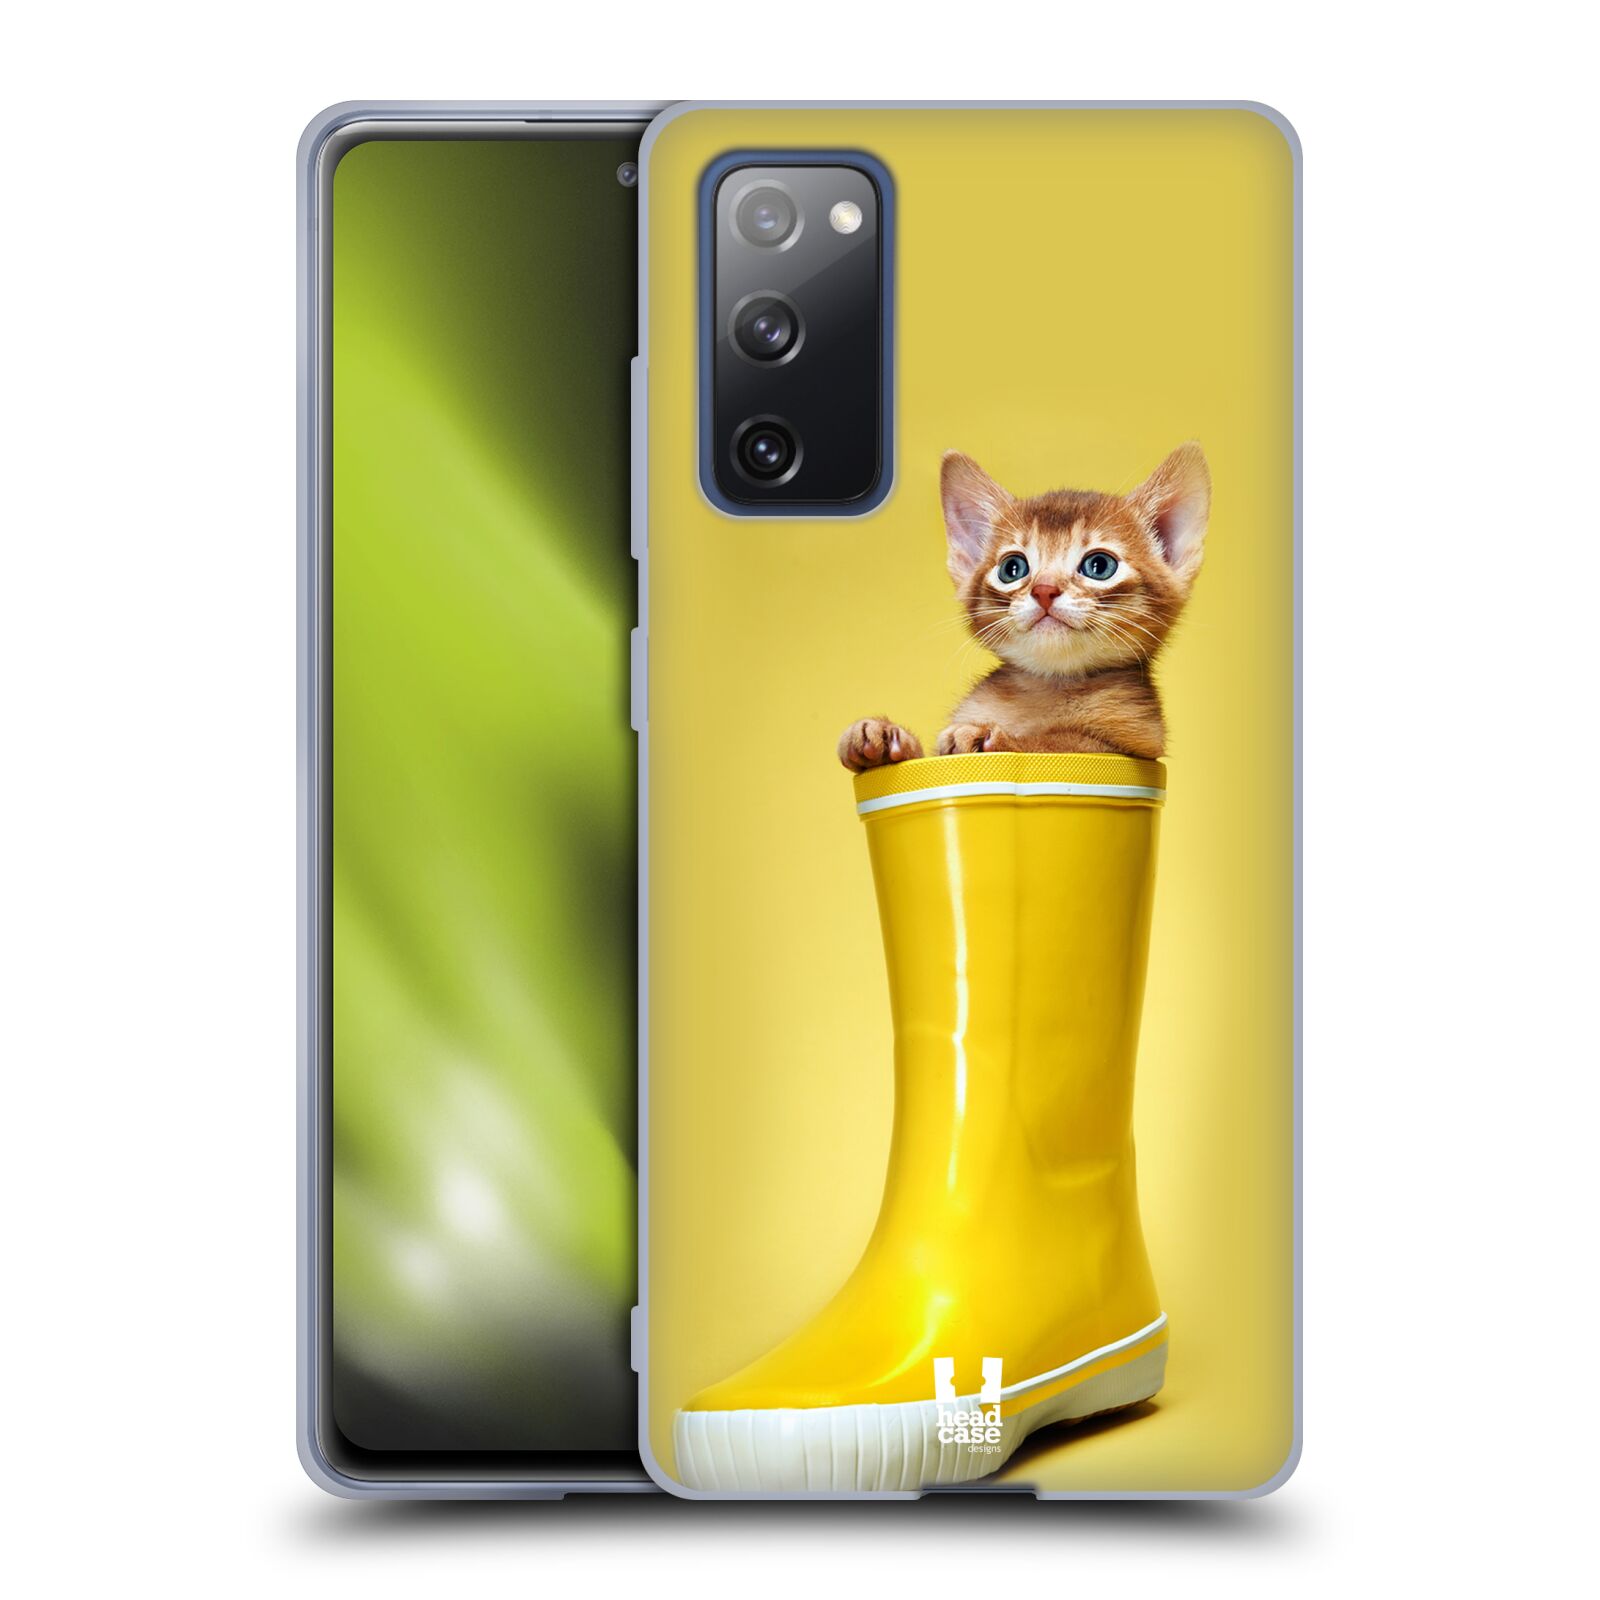 Plastový obal HEAD CASE na mobil Samsung Galaxy S20 FE / S20 FE 5G vzor Legrační zvířátka kotě v botě žlutá